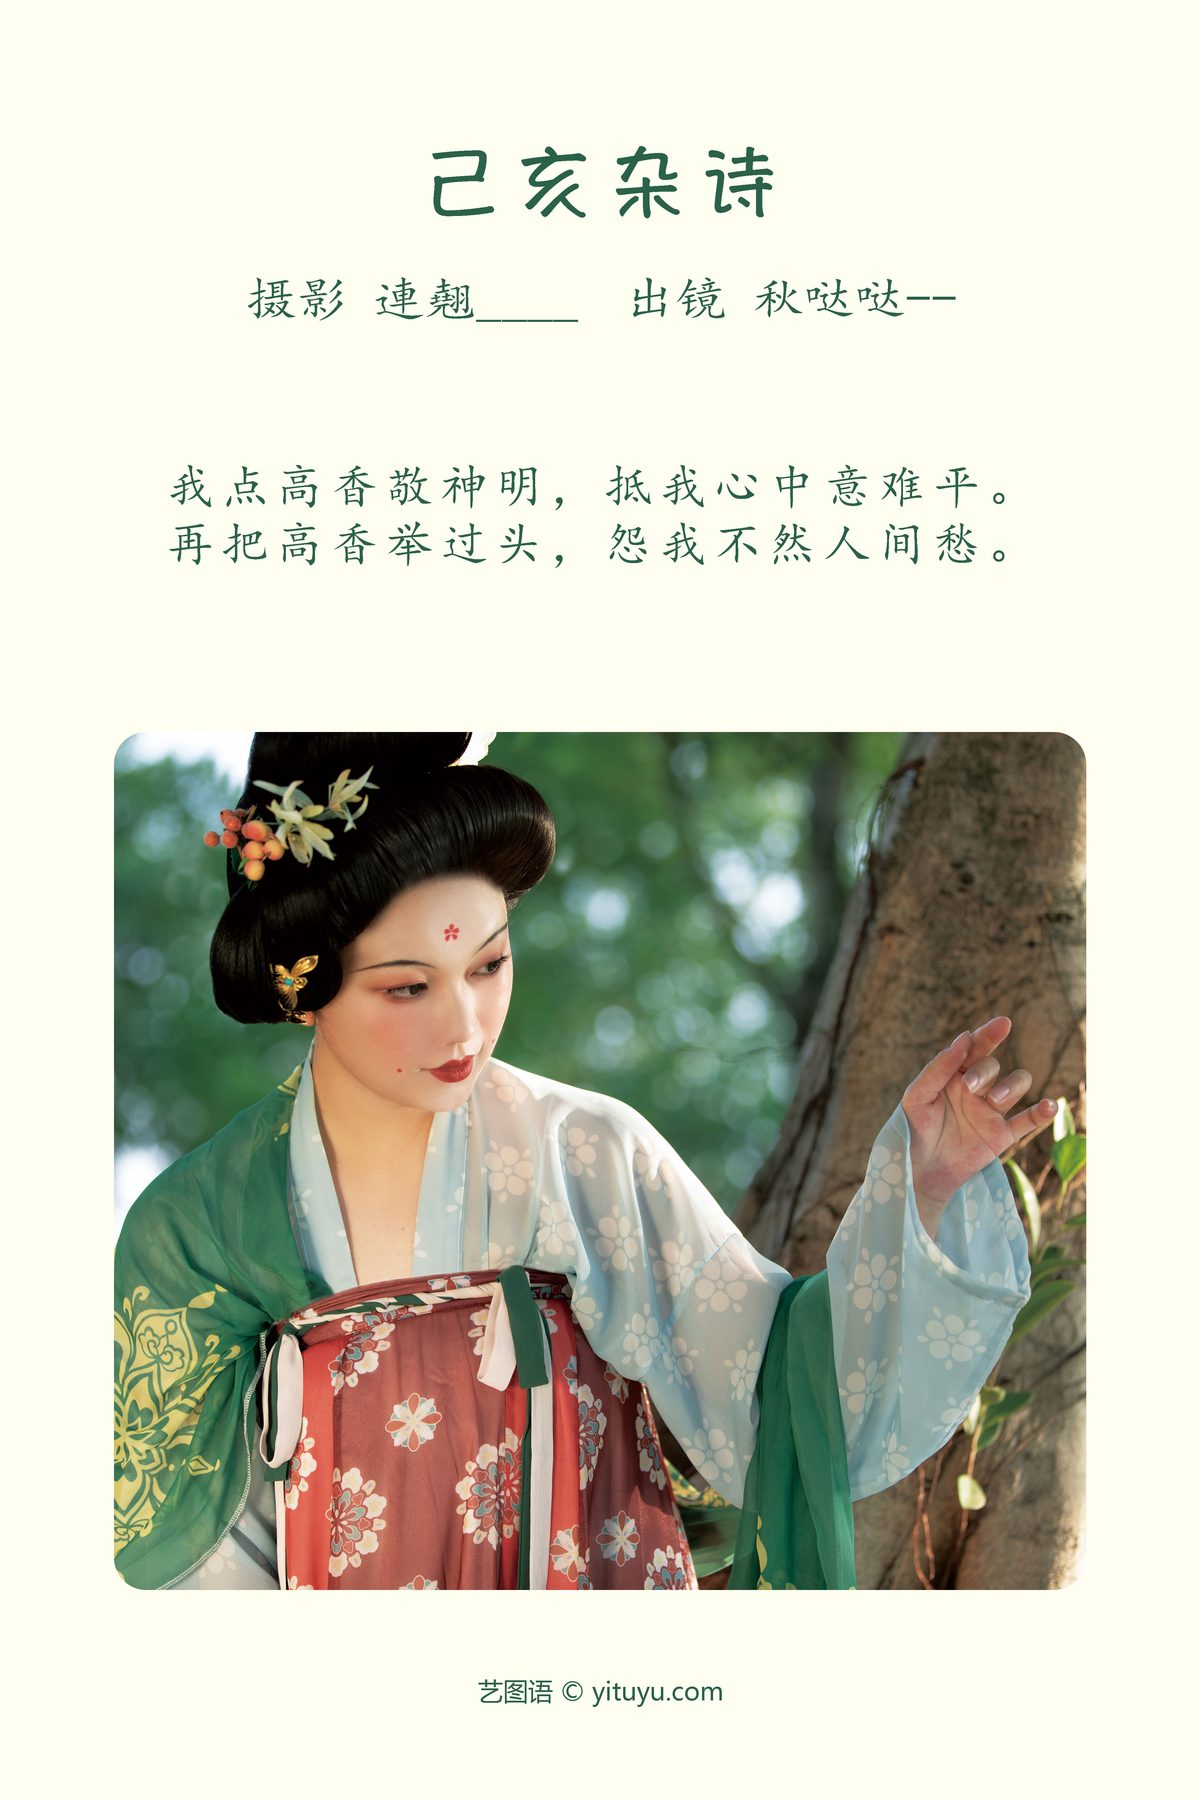 YiTuYu艺图语 Vol 3893 秋哒哒 0001 0141238962.jpg